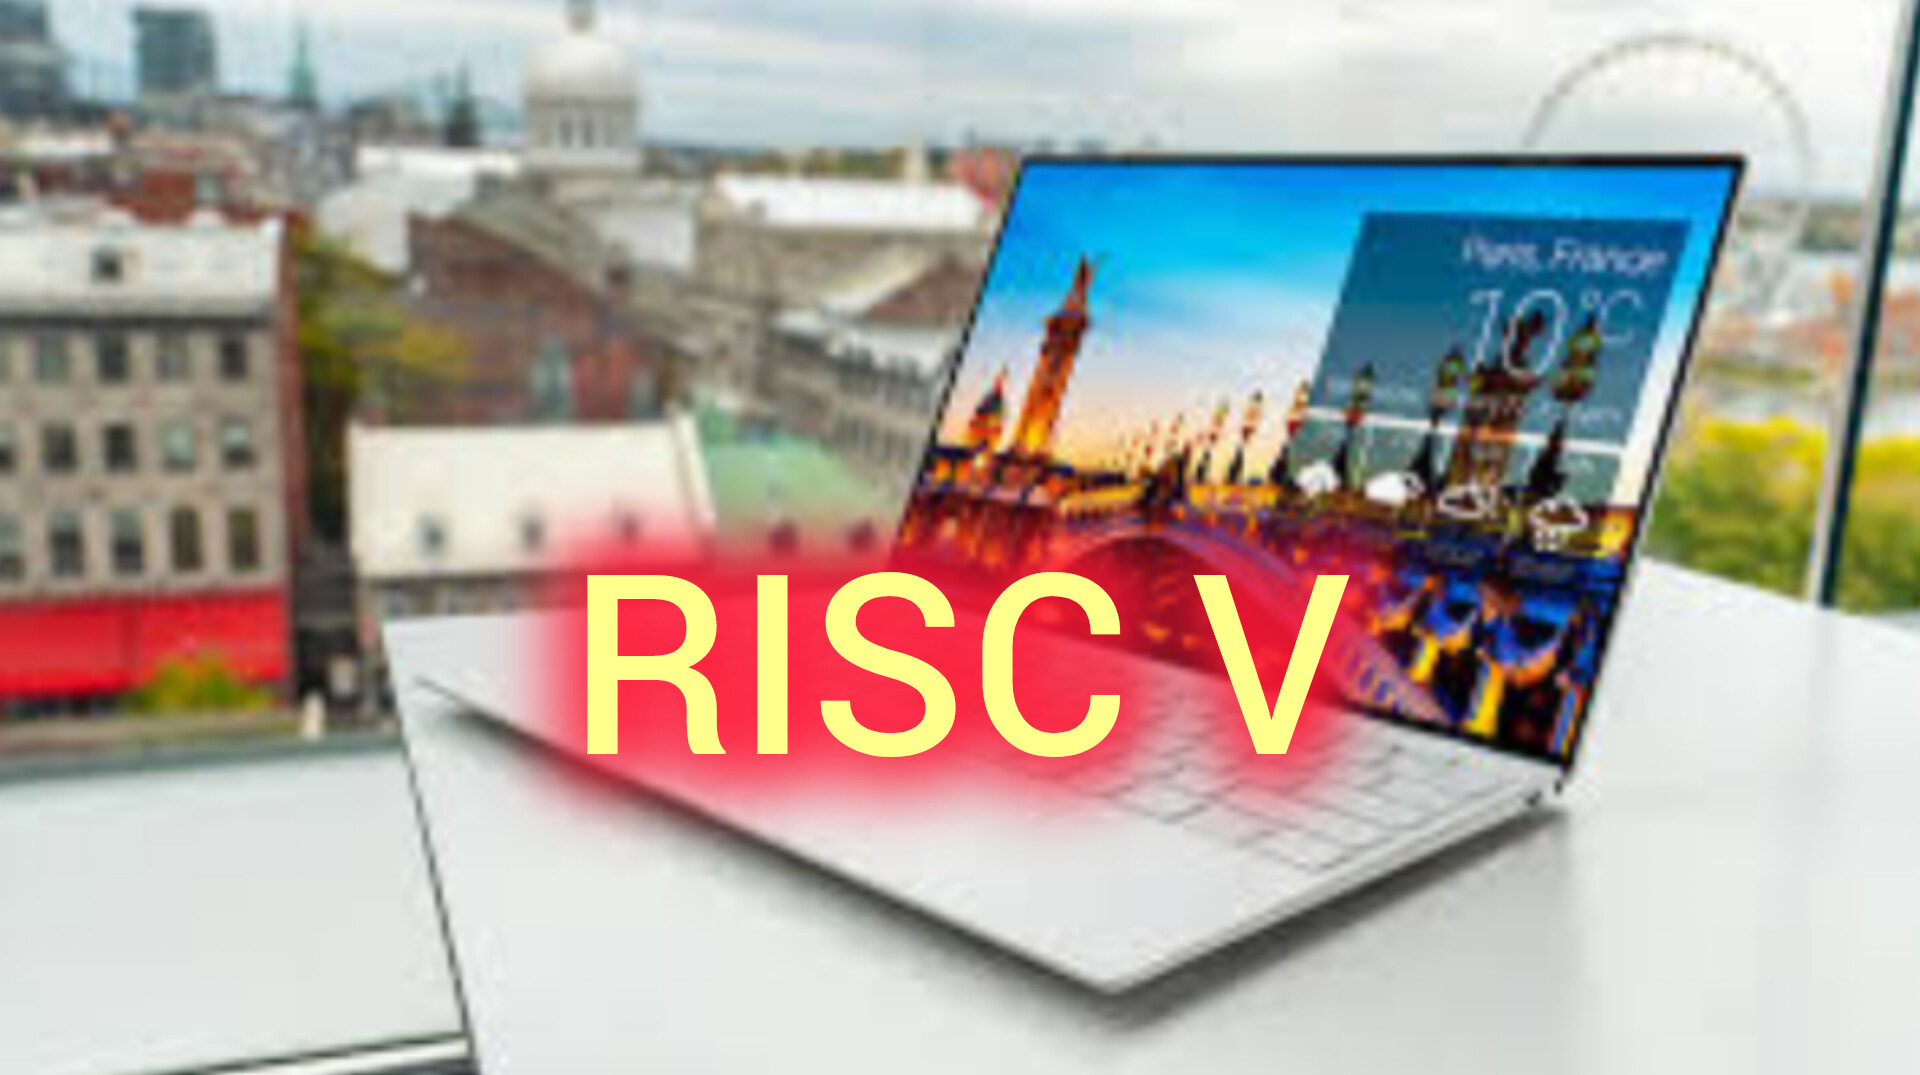 RISC V: Laptop Terbaru Dengan Desain Upgrade Prosesor Core Star JH7110. Simak Keunggulan Lainnya! 